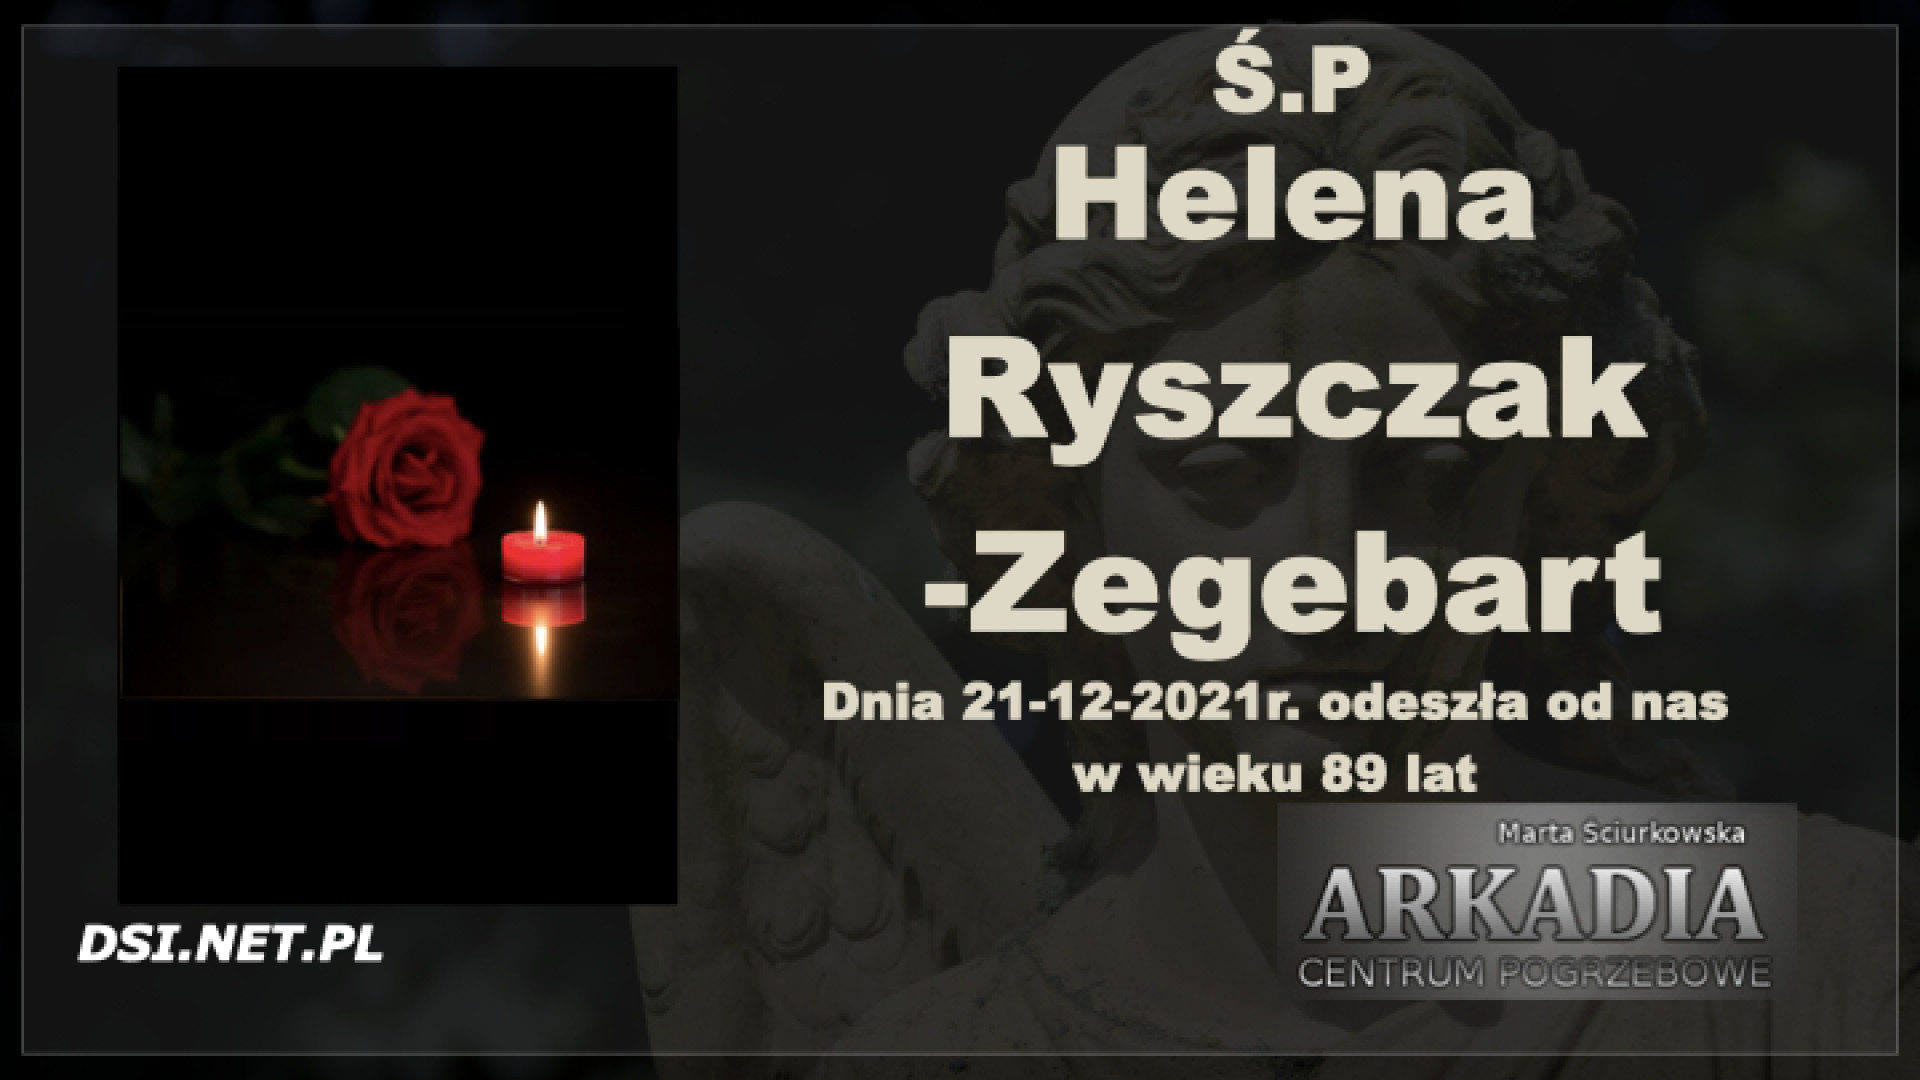 Ś.P. Helena Ryszczak-Zegebart